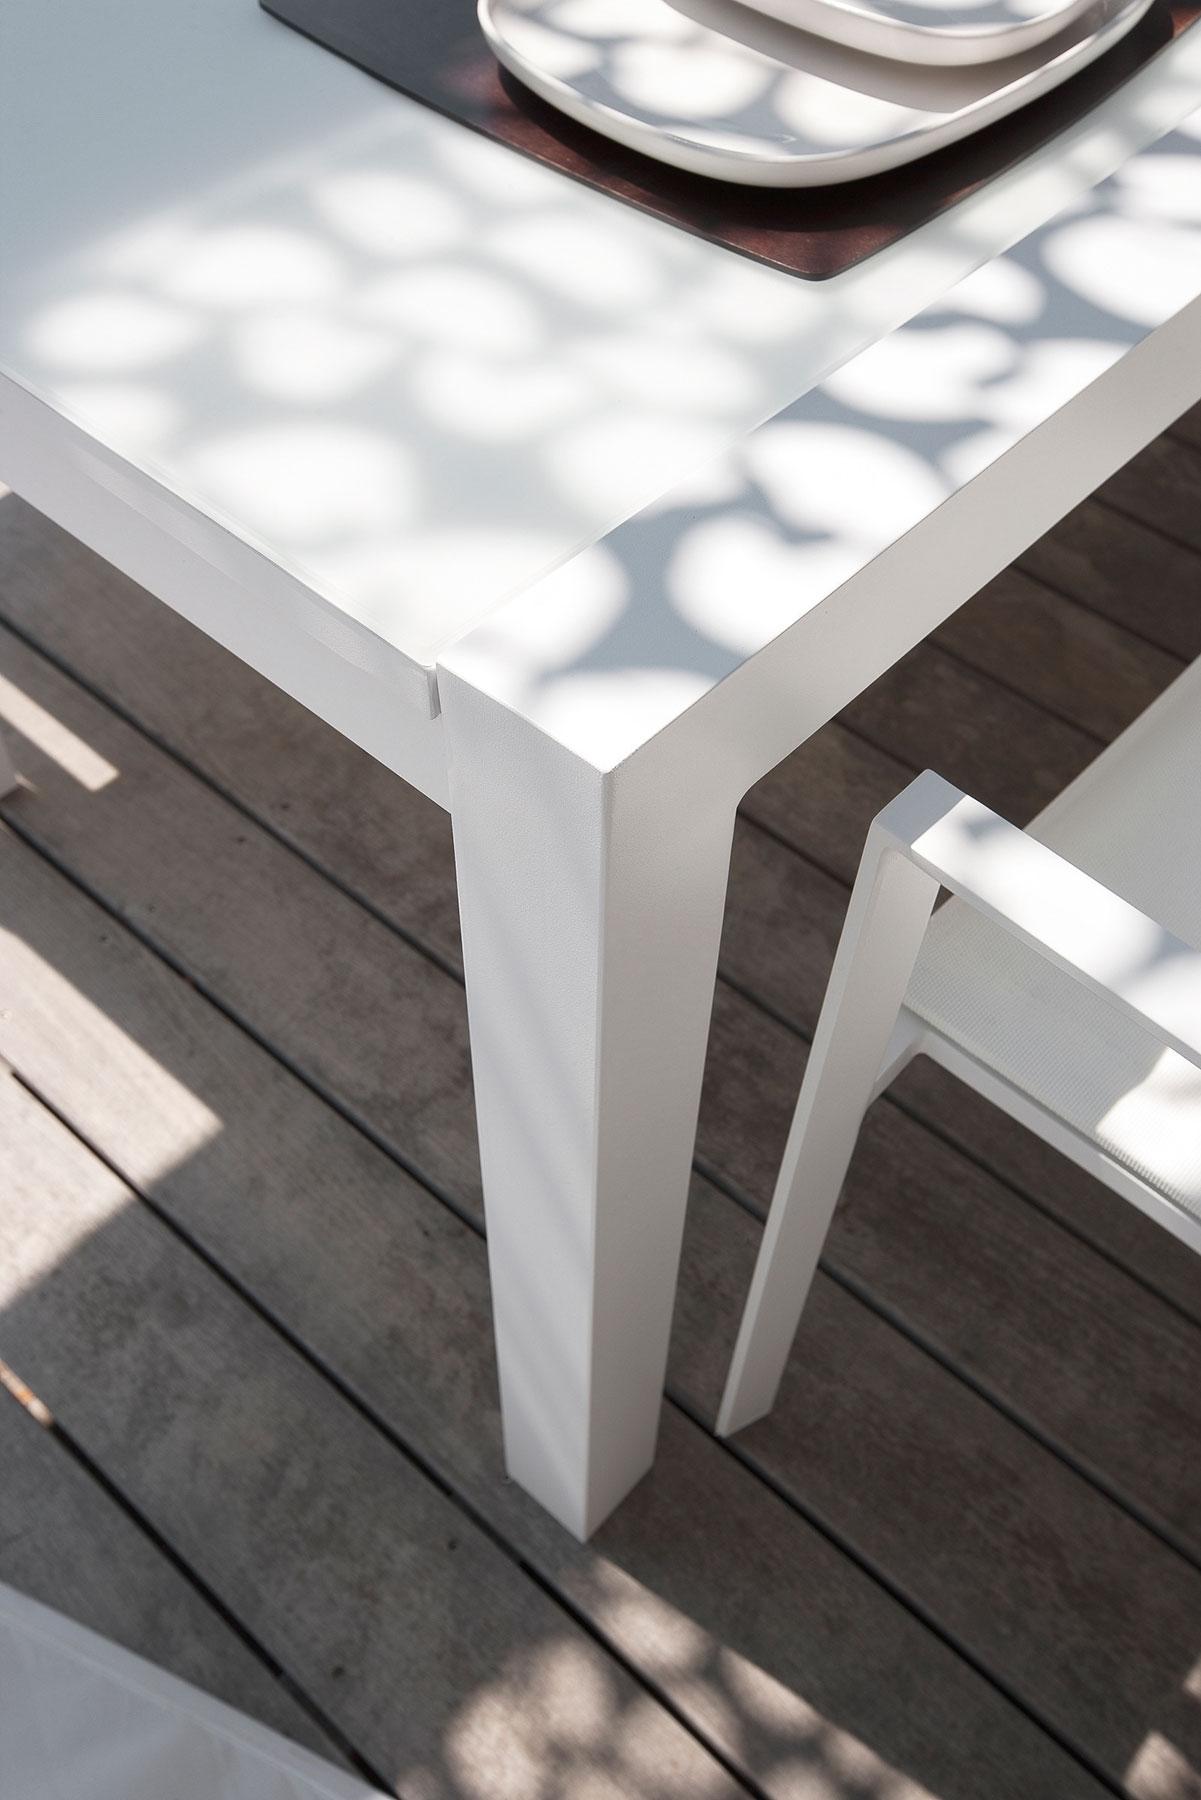 Petite table extérieur de terrasse RADIUM en métal aluminium de couleur et  en bois massif - SEANROYALE